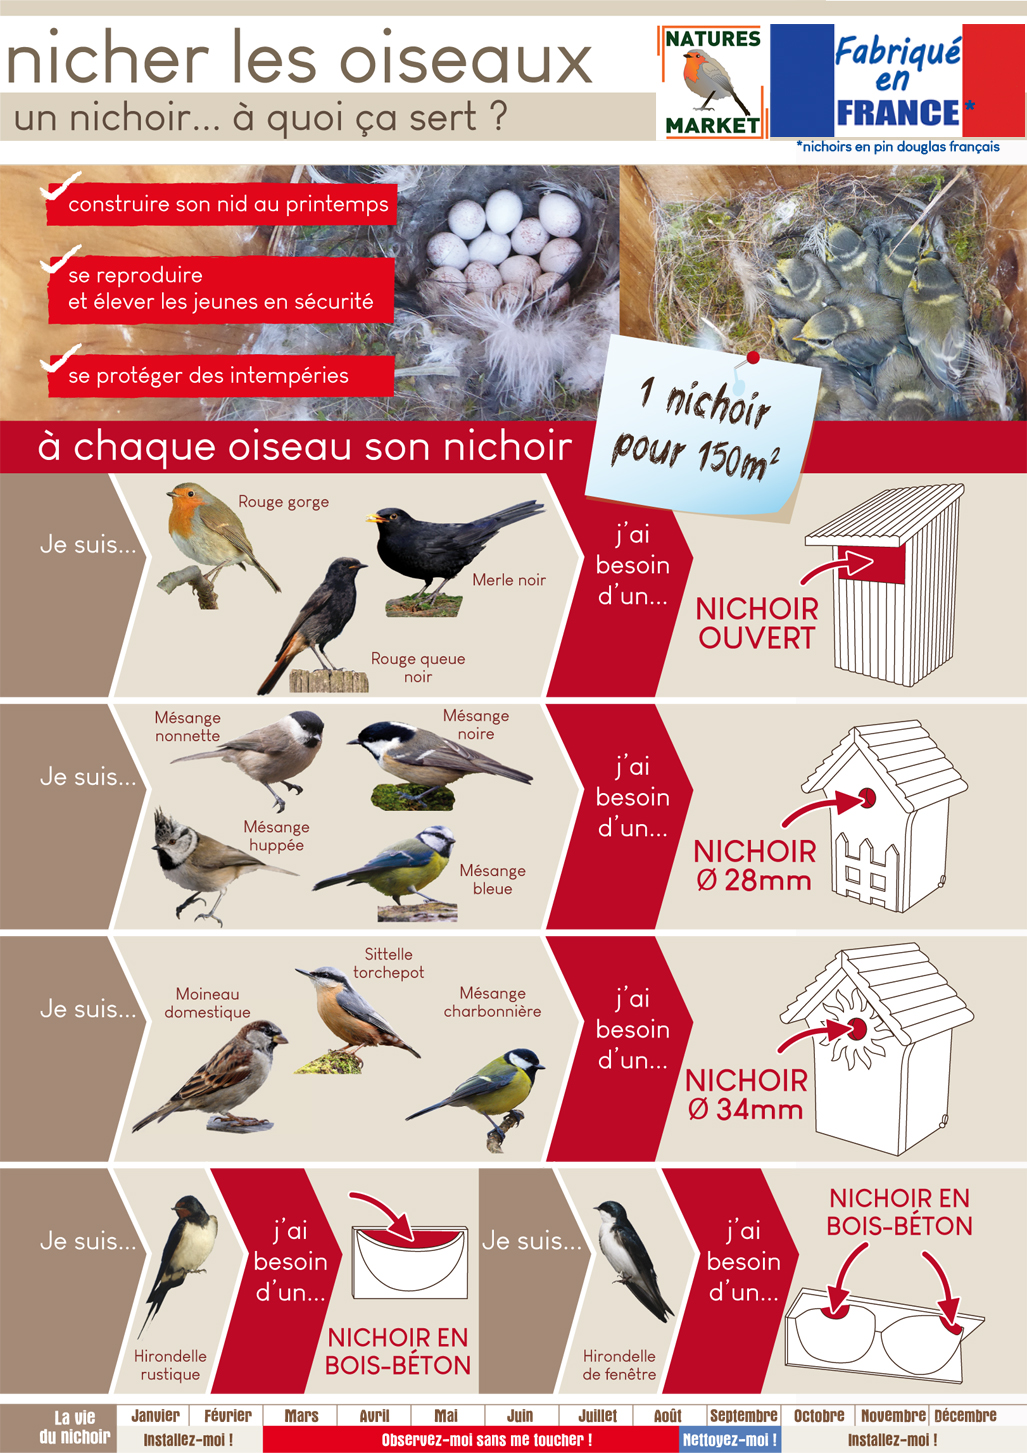 nicher les oiseaux guide 1